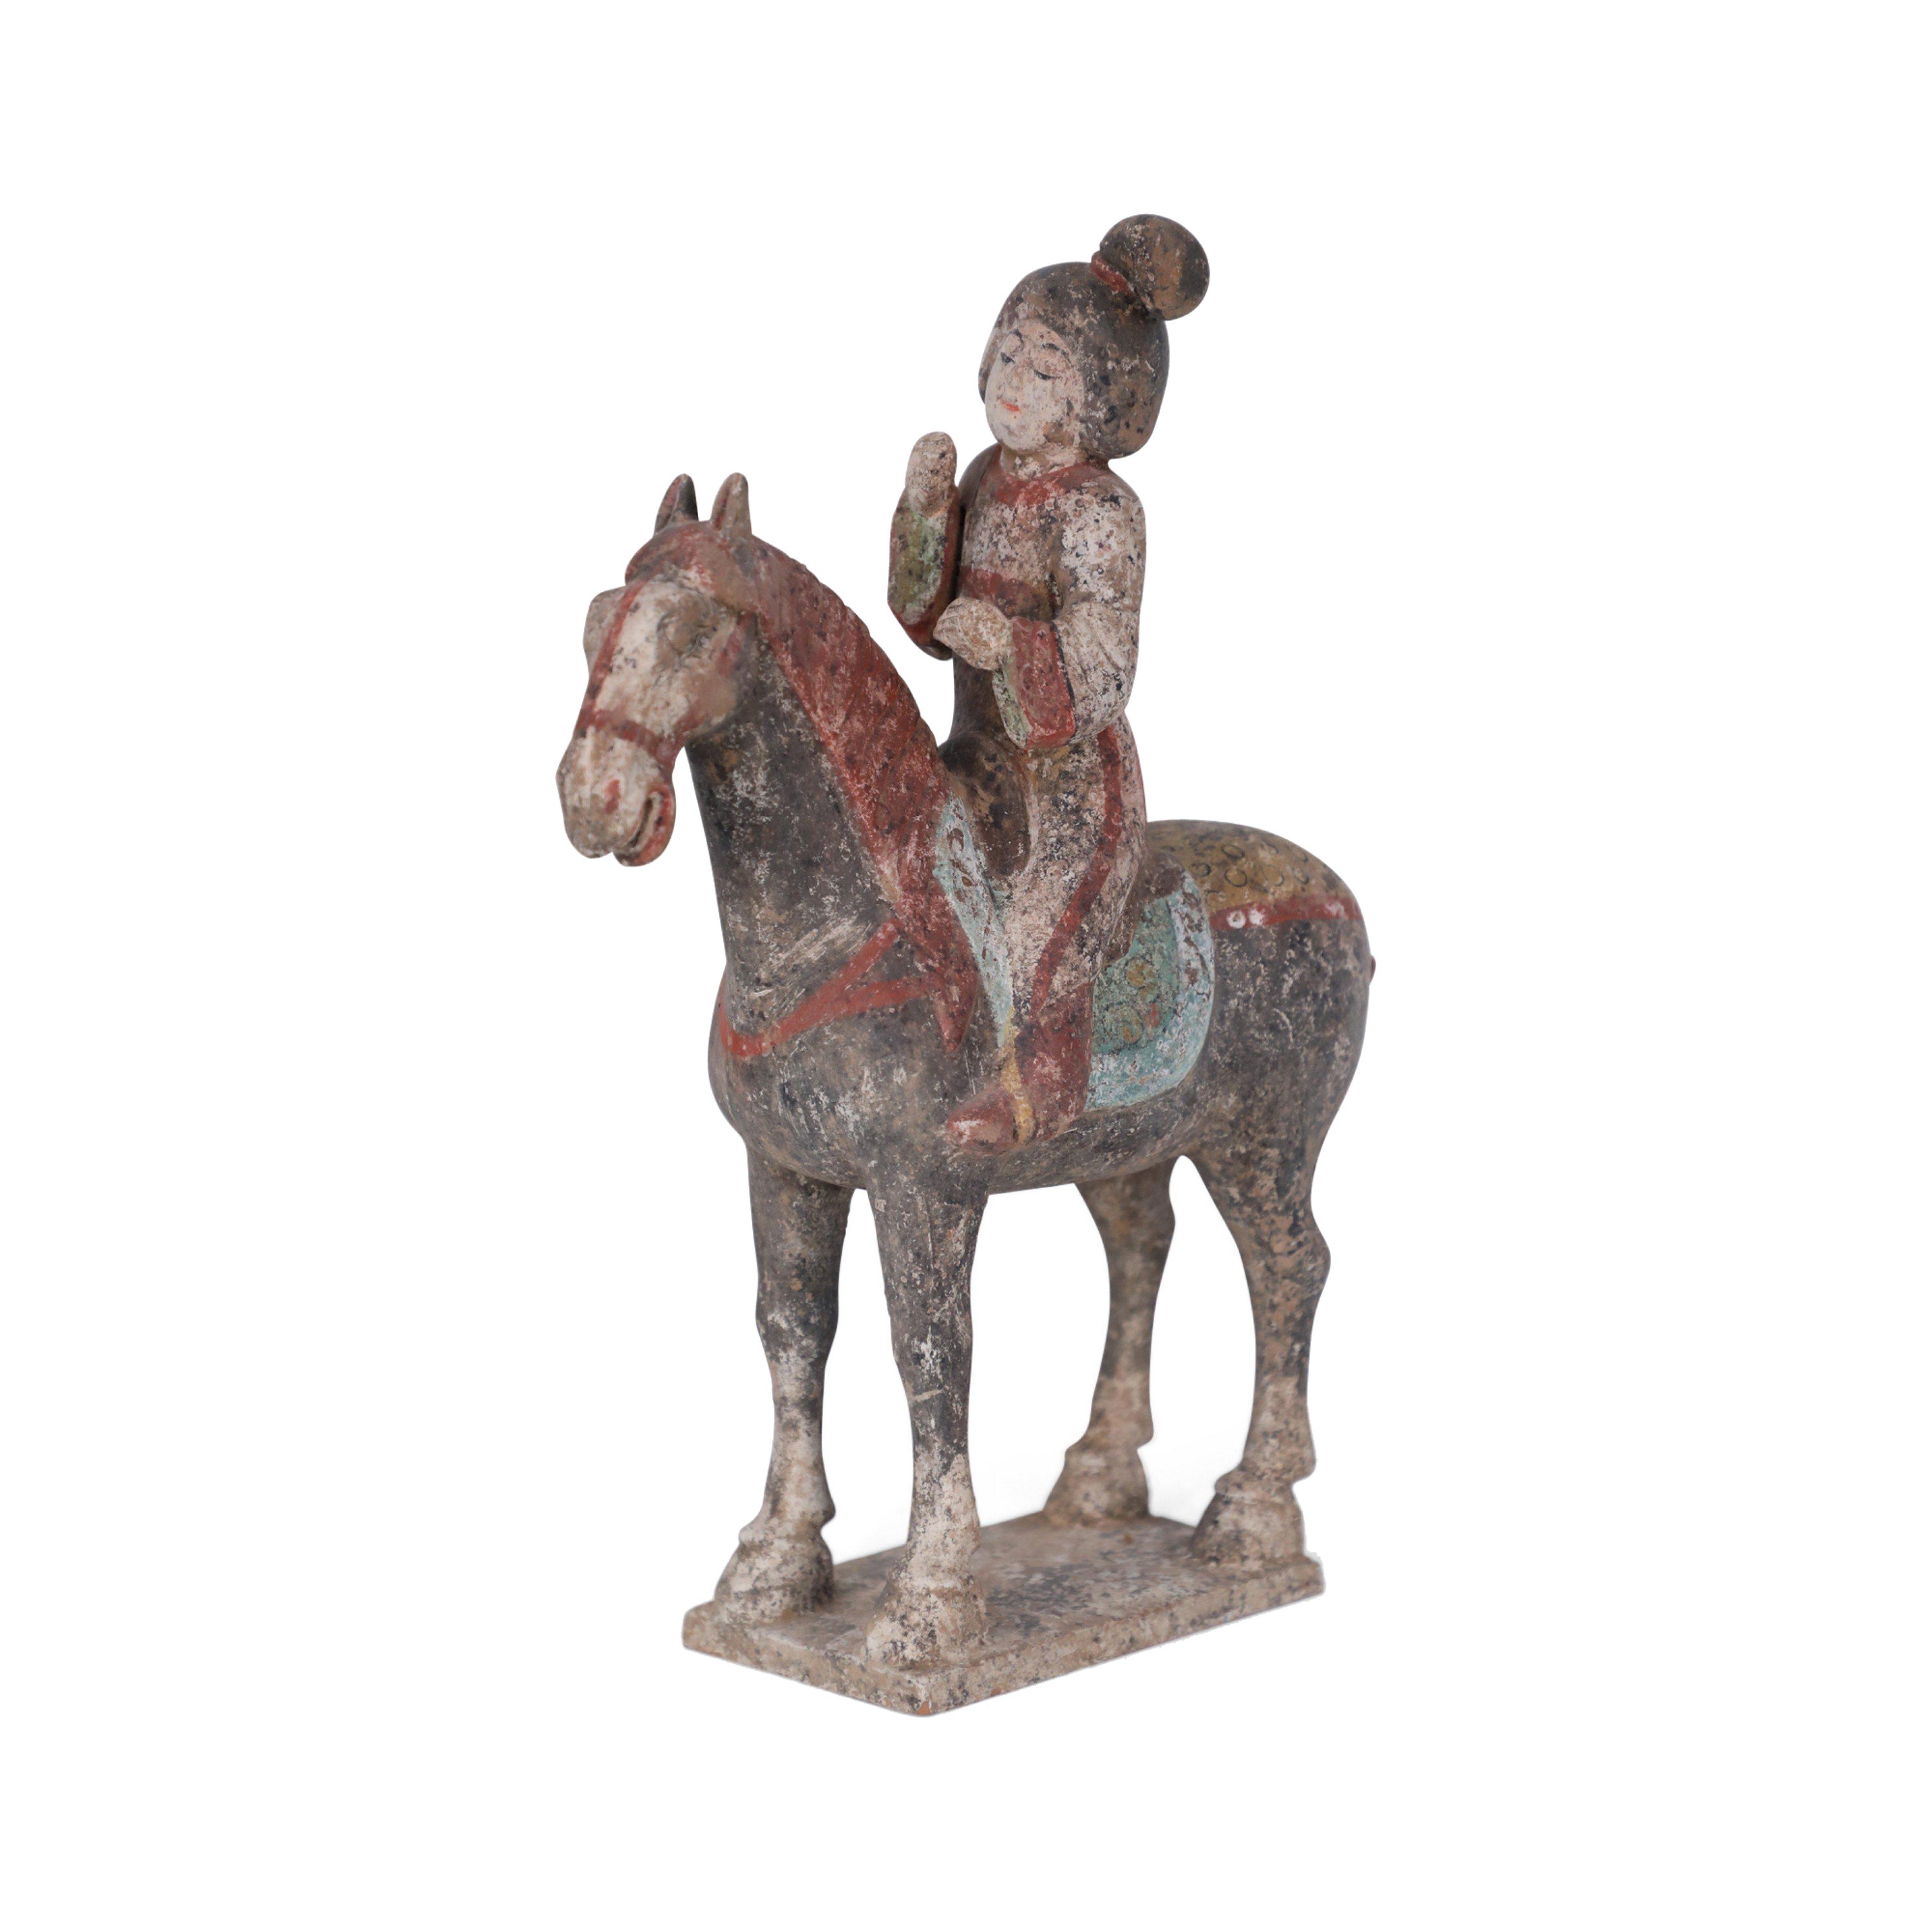 Chinesische Terrakotta-Figur einer Frau und eines Pferdes im Stil der Tang-Dynastie